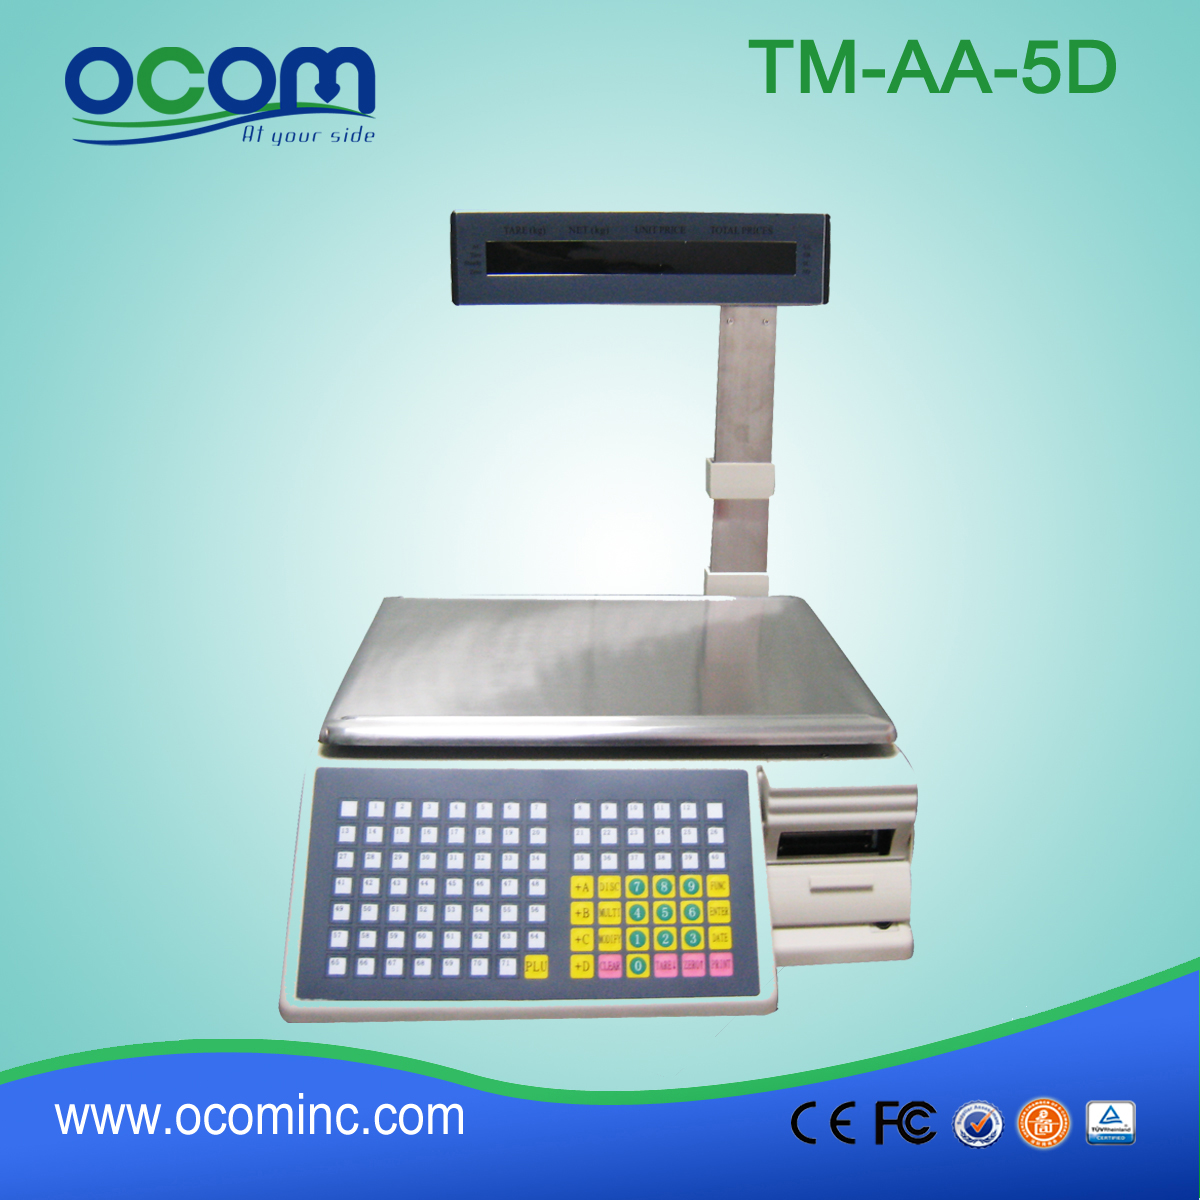 Escala de impresión de código de barras TM-AA-5D